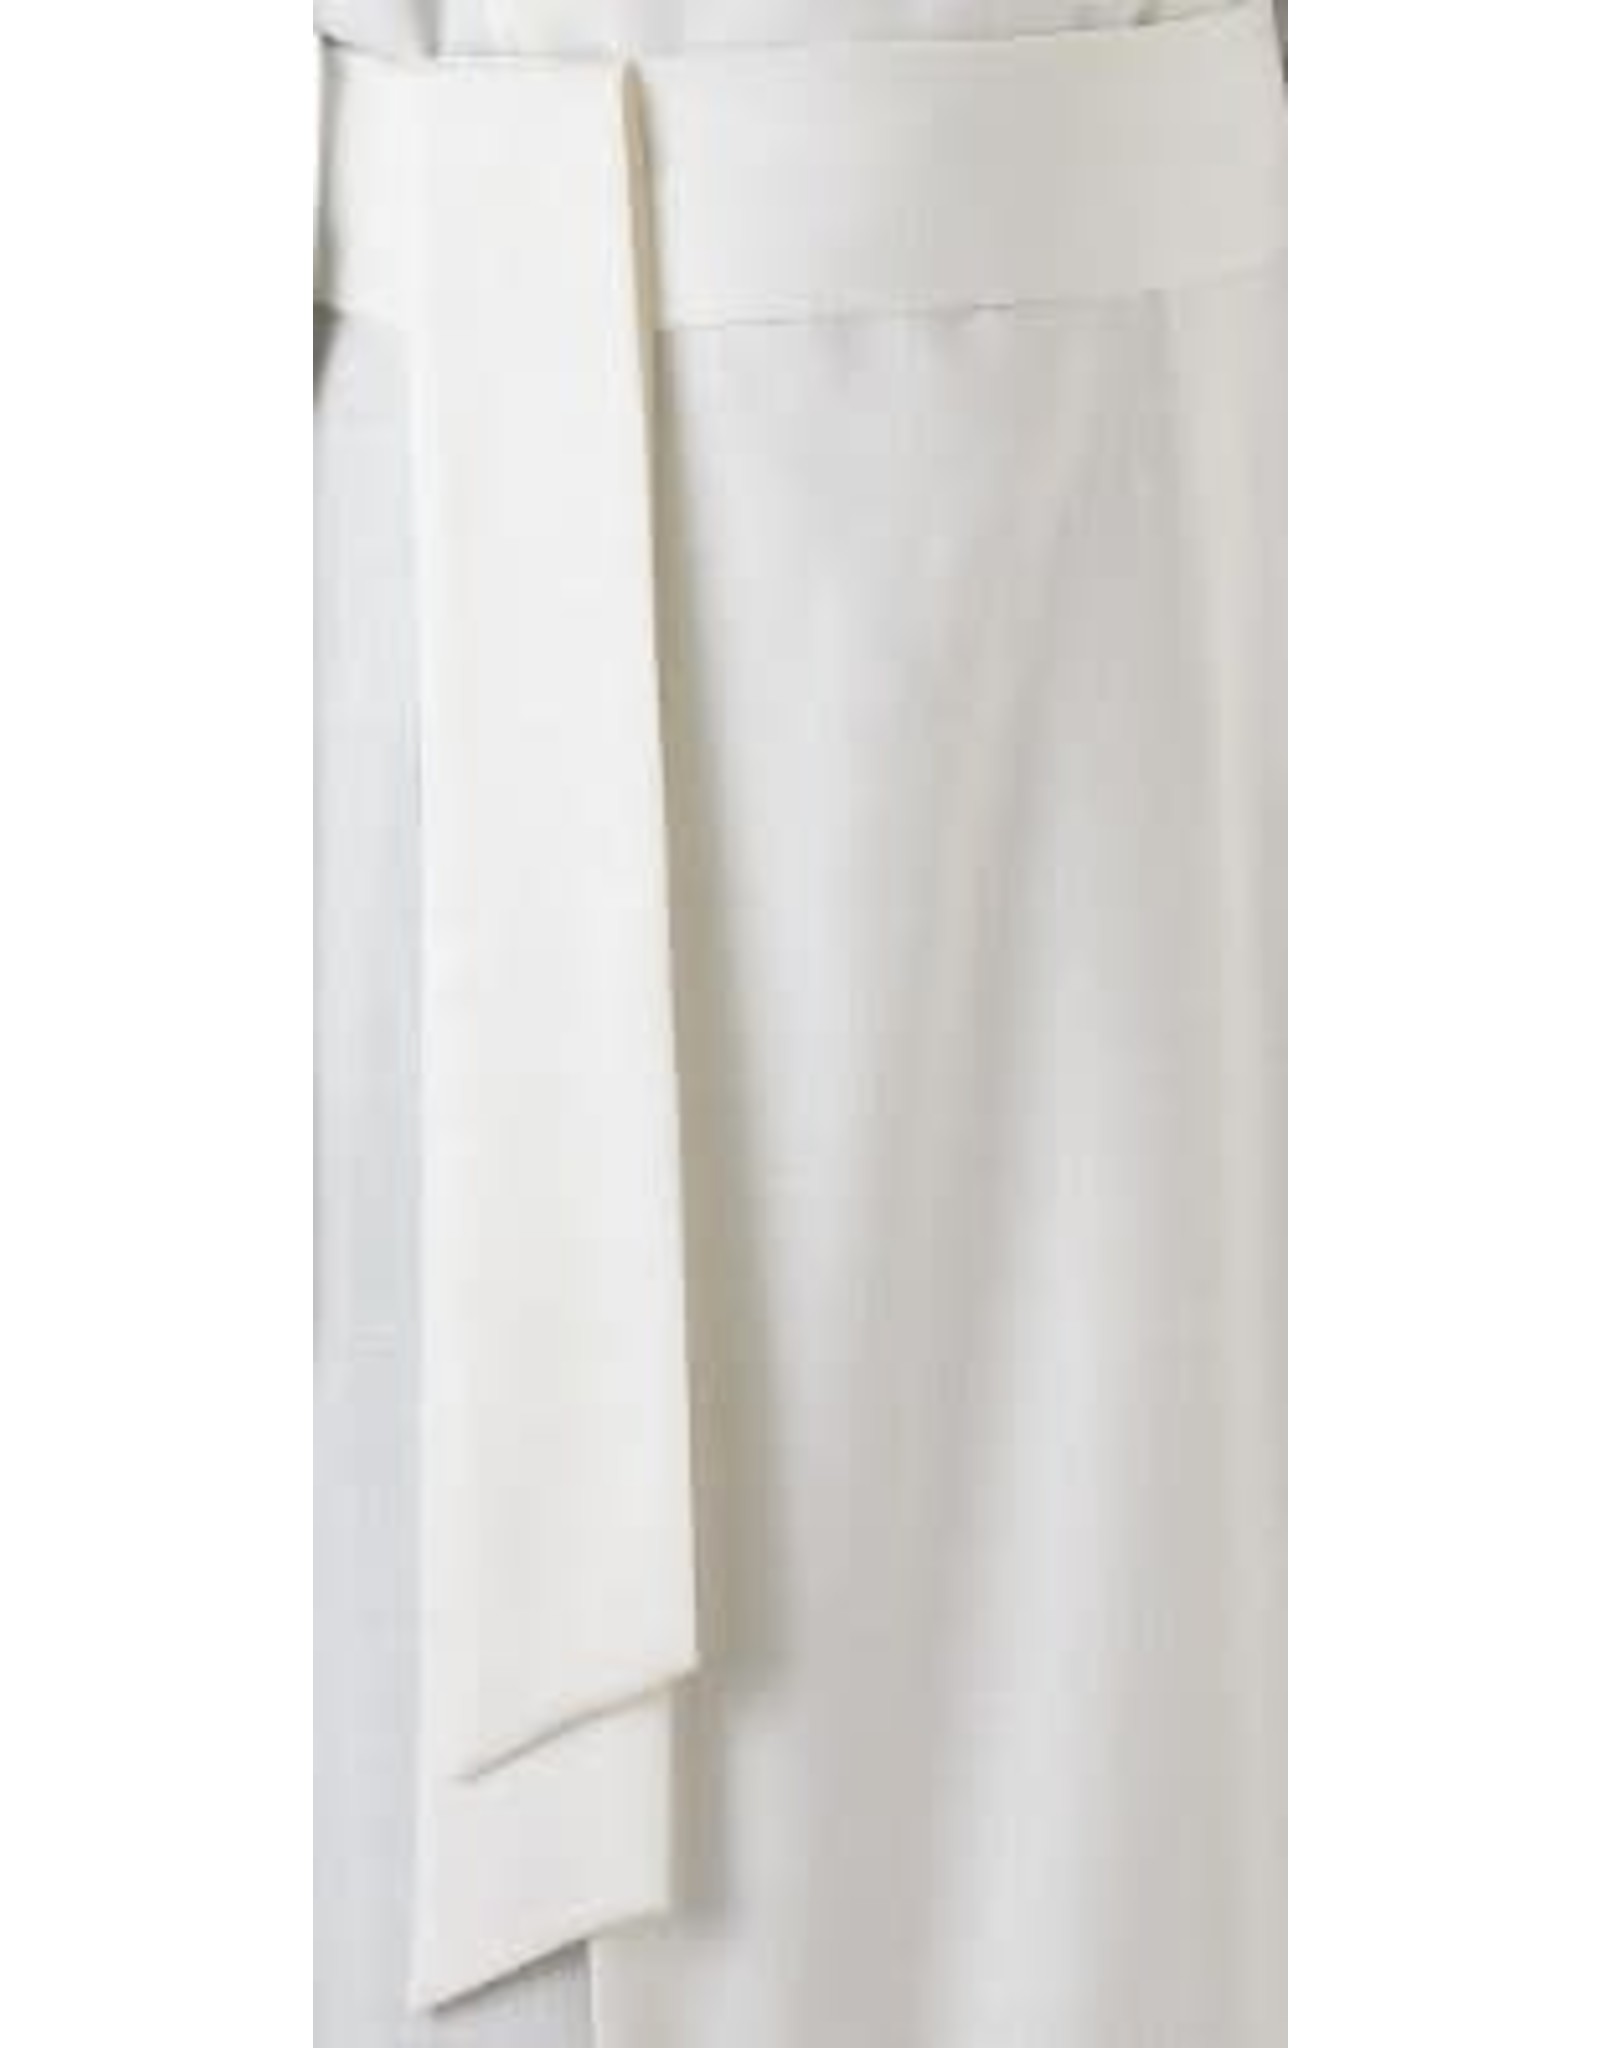 Belt Cincture - White, Velcro, Size 44" Waist